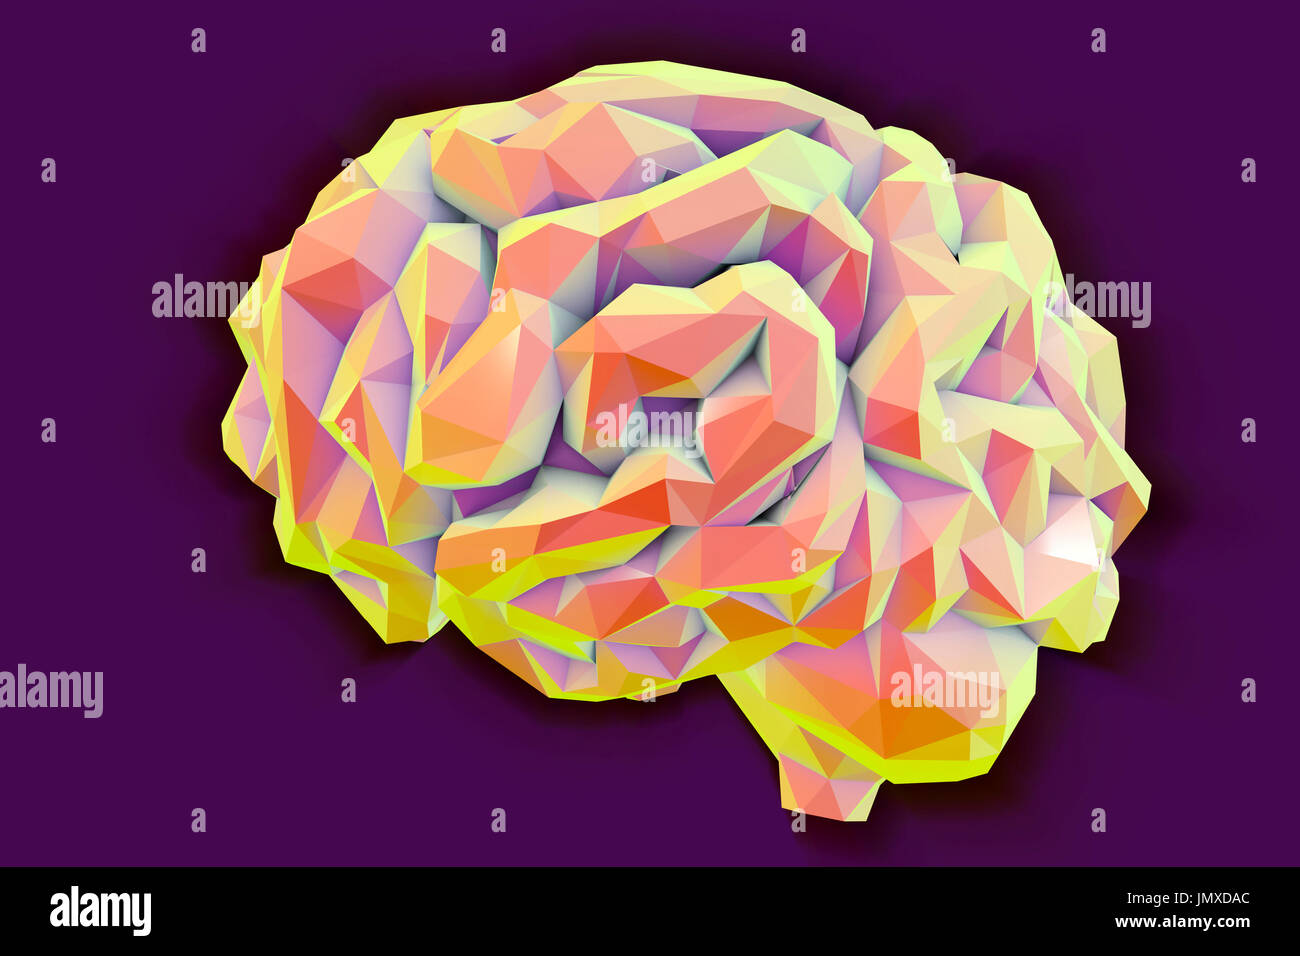 Menschliche Gehirn, niedrig-polygonale Computer Illustration. Stockfoto